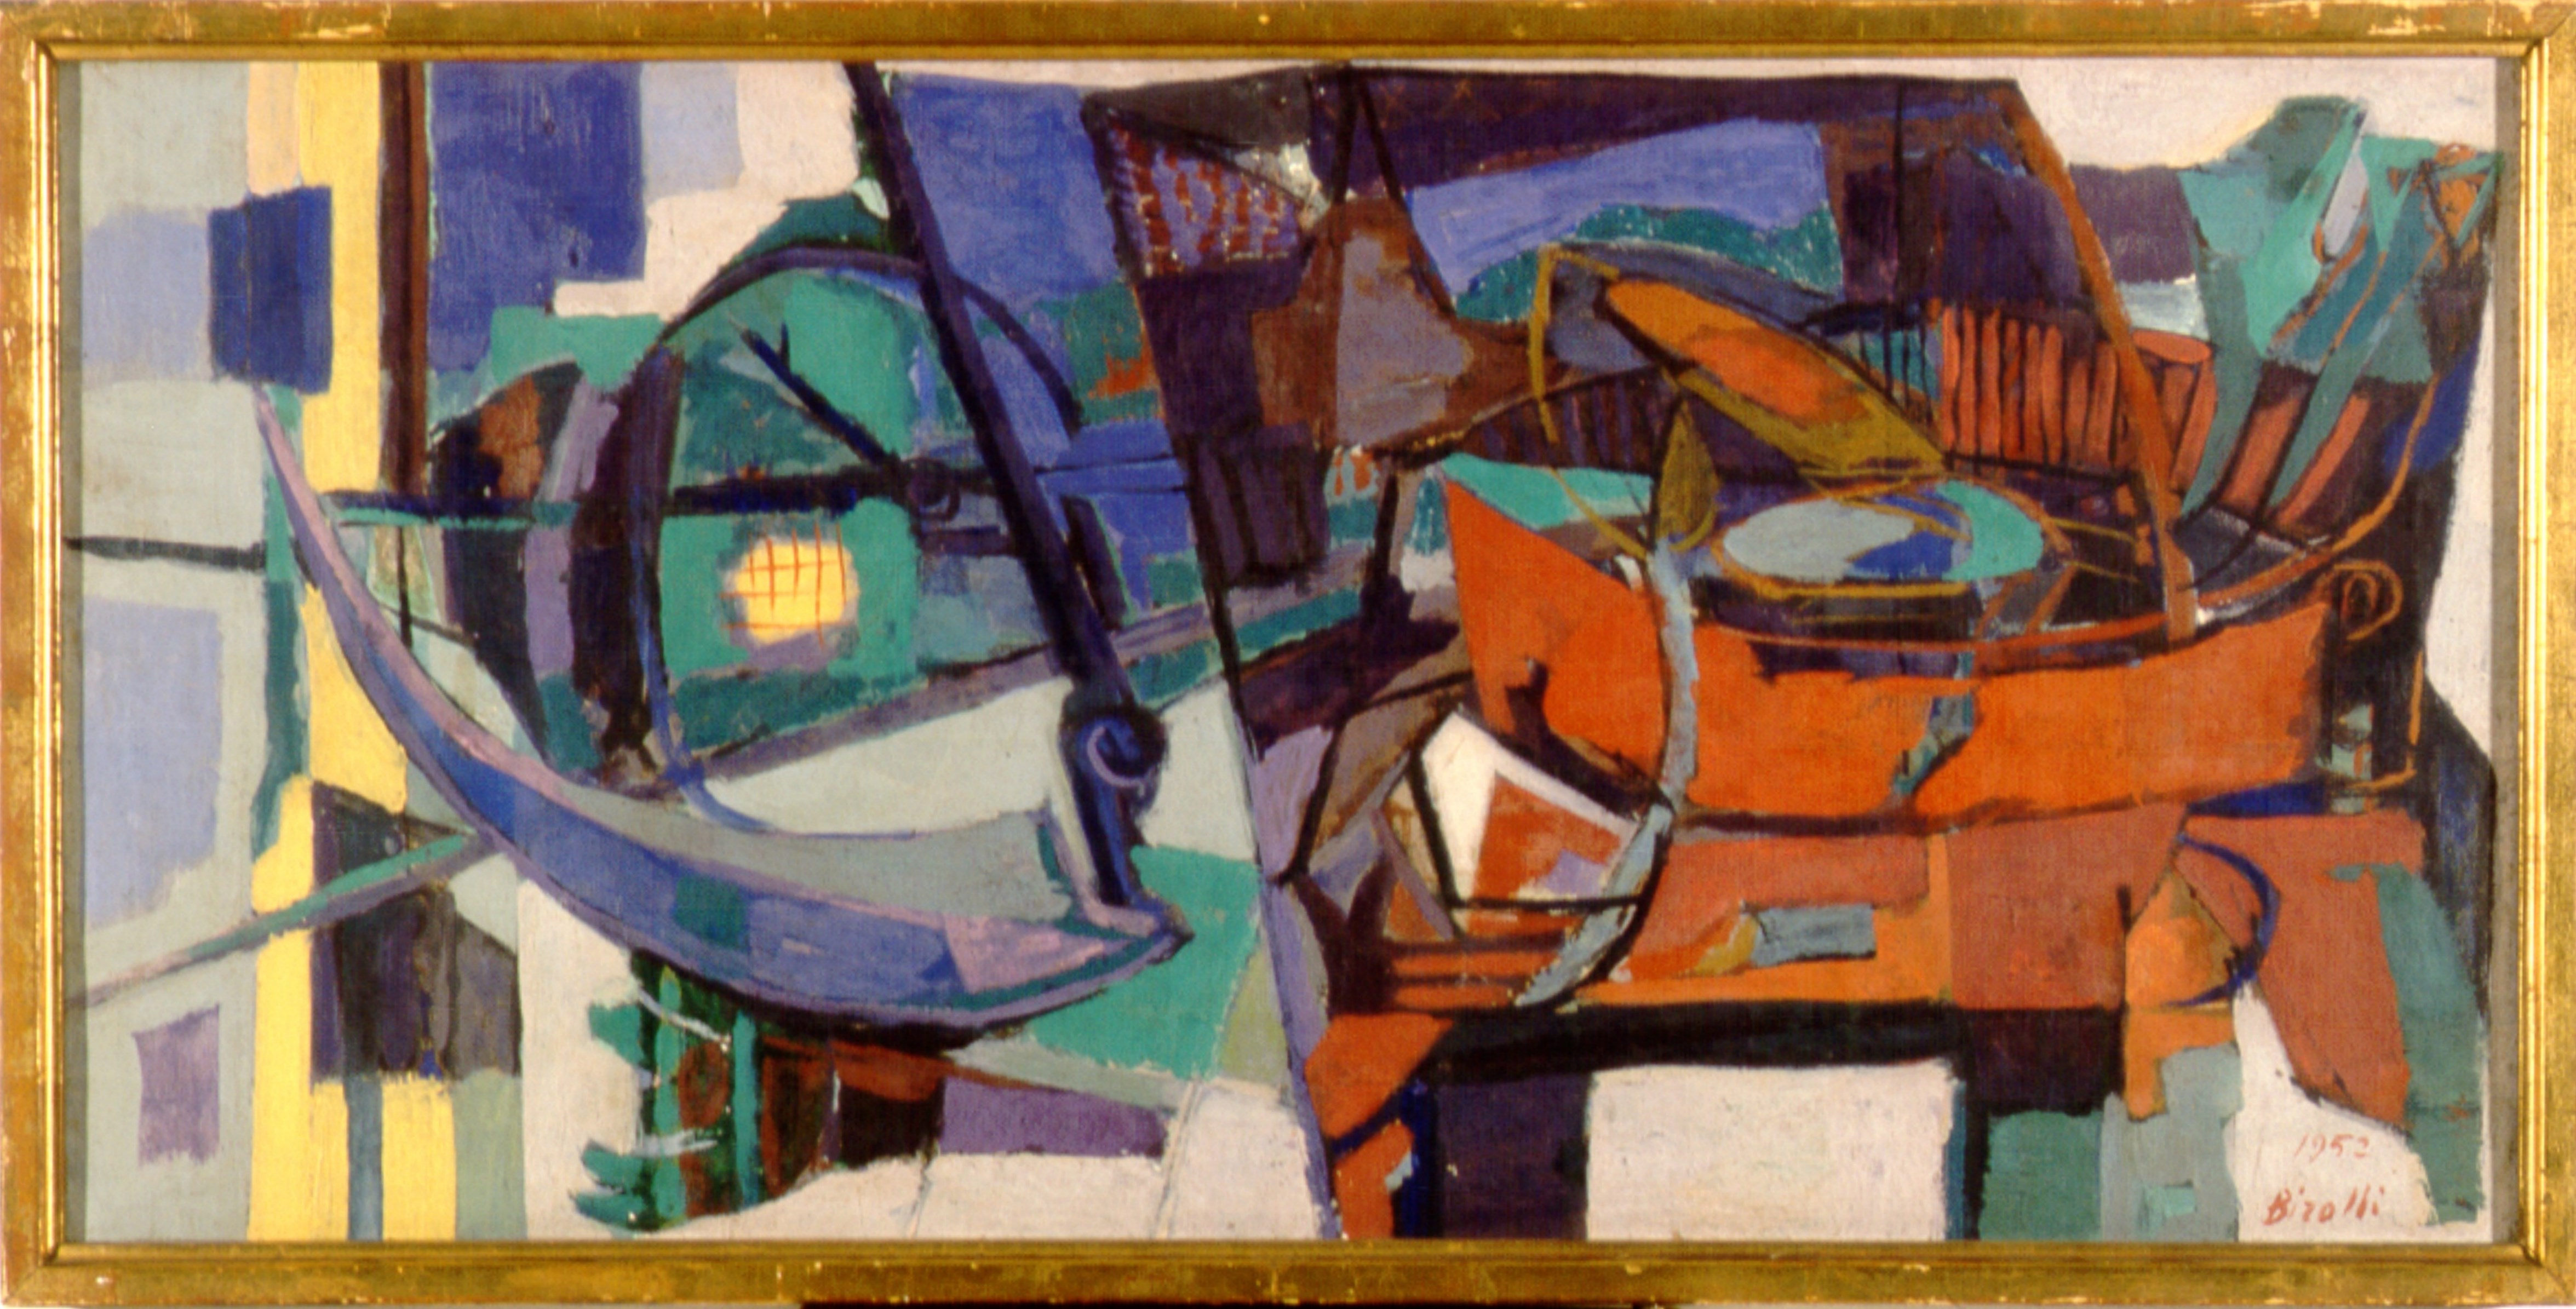 Foice, cadeira e cesto sobre a eira (1952), de Renato Birolli [óleo/tela, 54 x 110 cm]. Coleção Francisco Matarazzo Sobrinho, MAC/USP. Fotografia de Rômulo Fialdini.